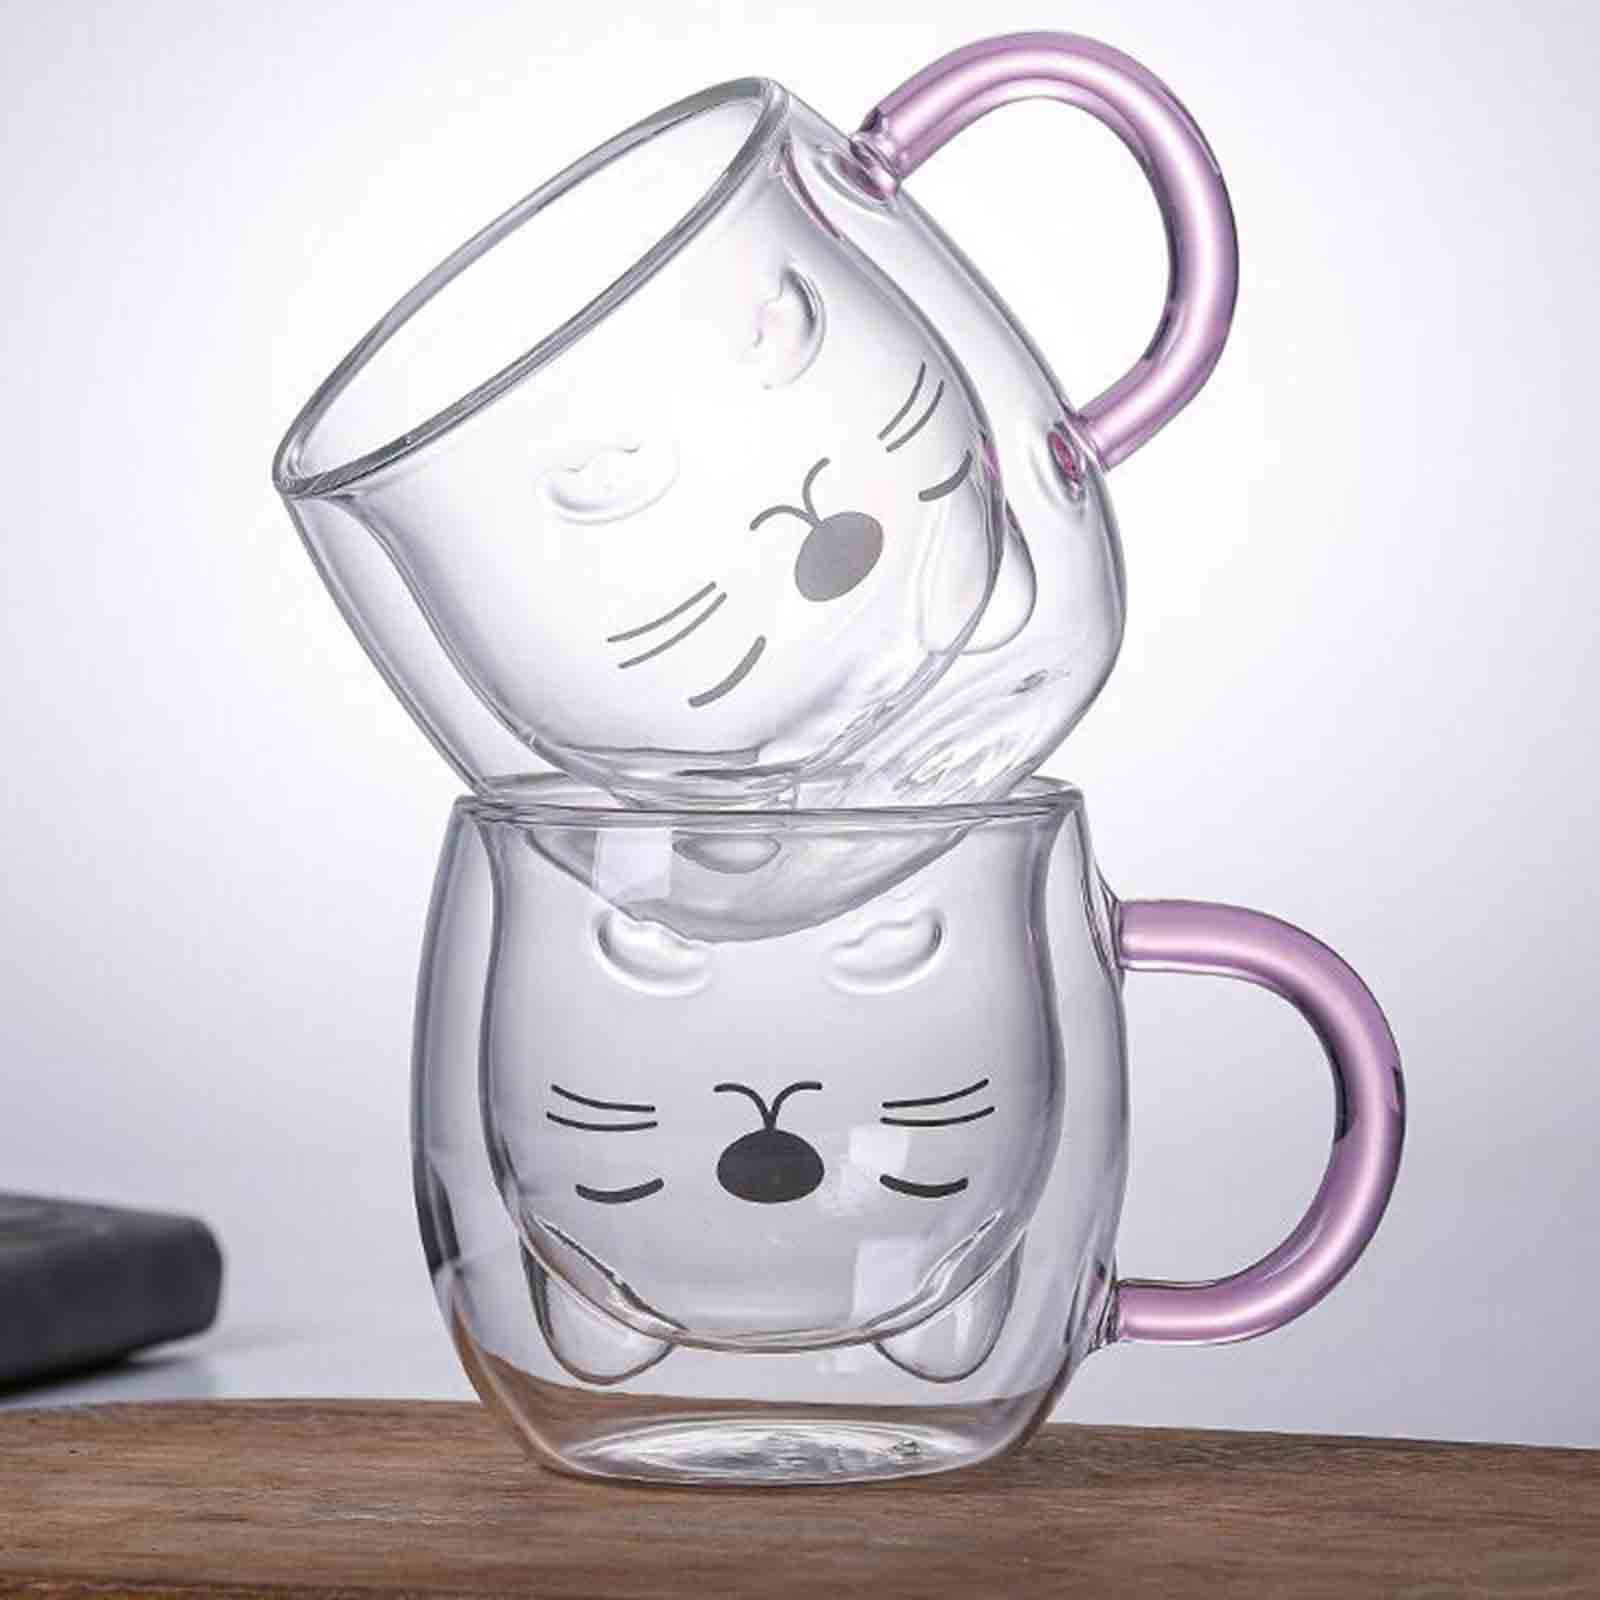 JASHII Glass Mugs Double Wall Glass Mug with Handle, Bear Cat Animal Double-Layer Glass Mug Coffee Cup, Christmas Mug Gift,Cute Tea Milk Cup. 